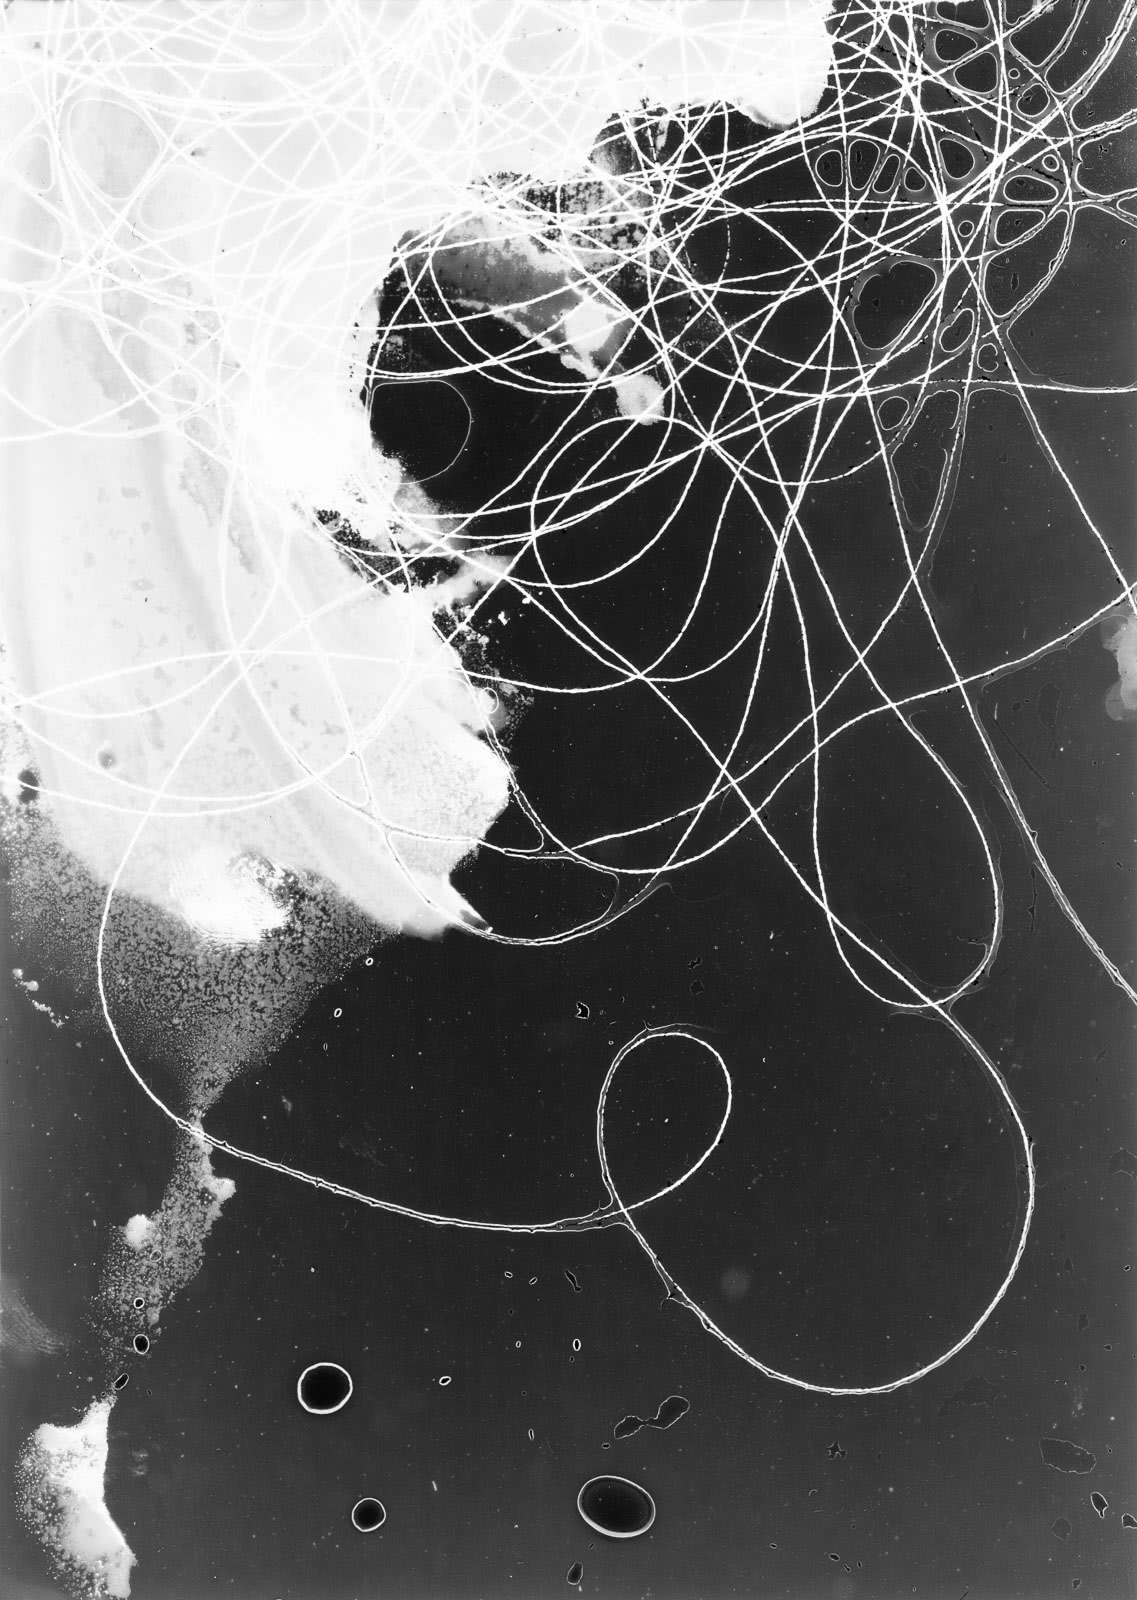 Expérimentations argentiques en noir et blanc sur papier Illford. Expérimentations plastiques sur surfaces transparentes, sans négatif - Fullscreen